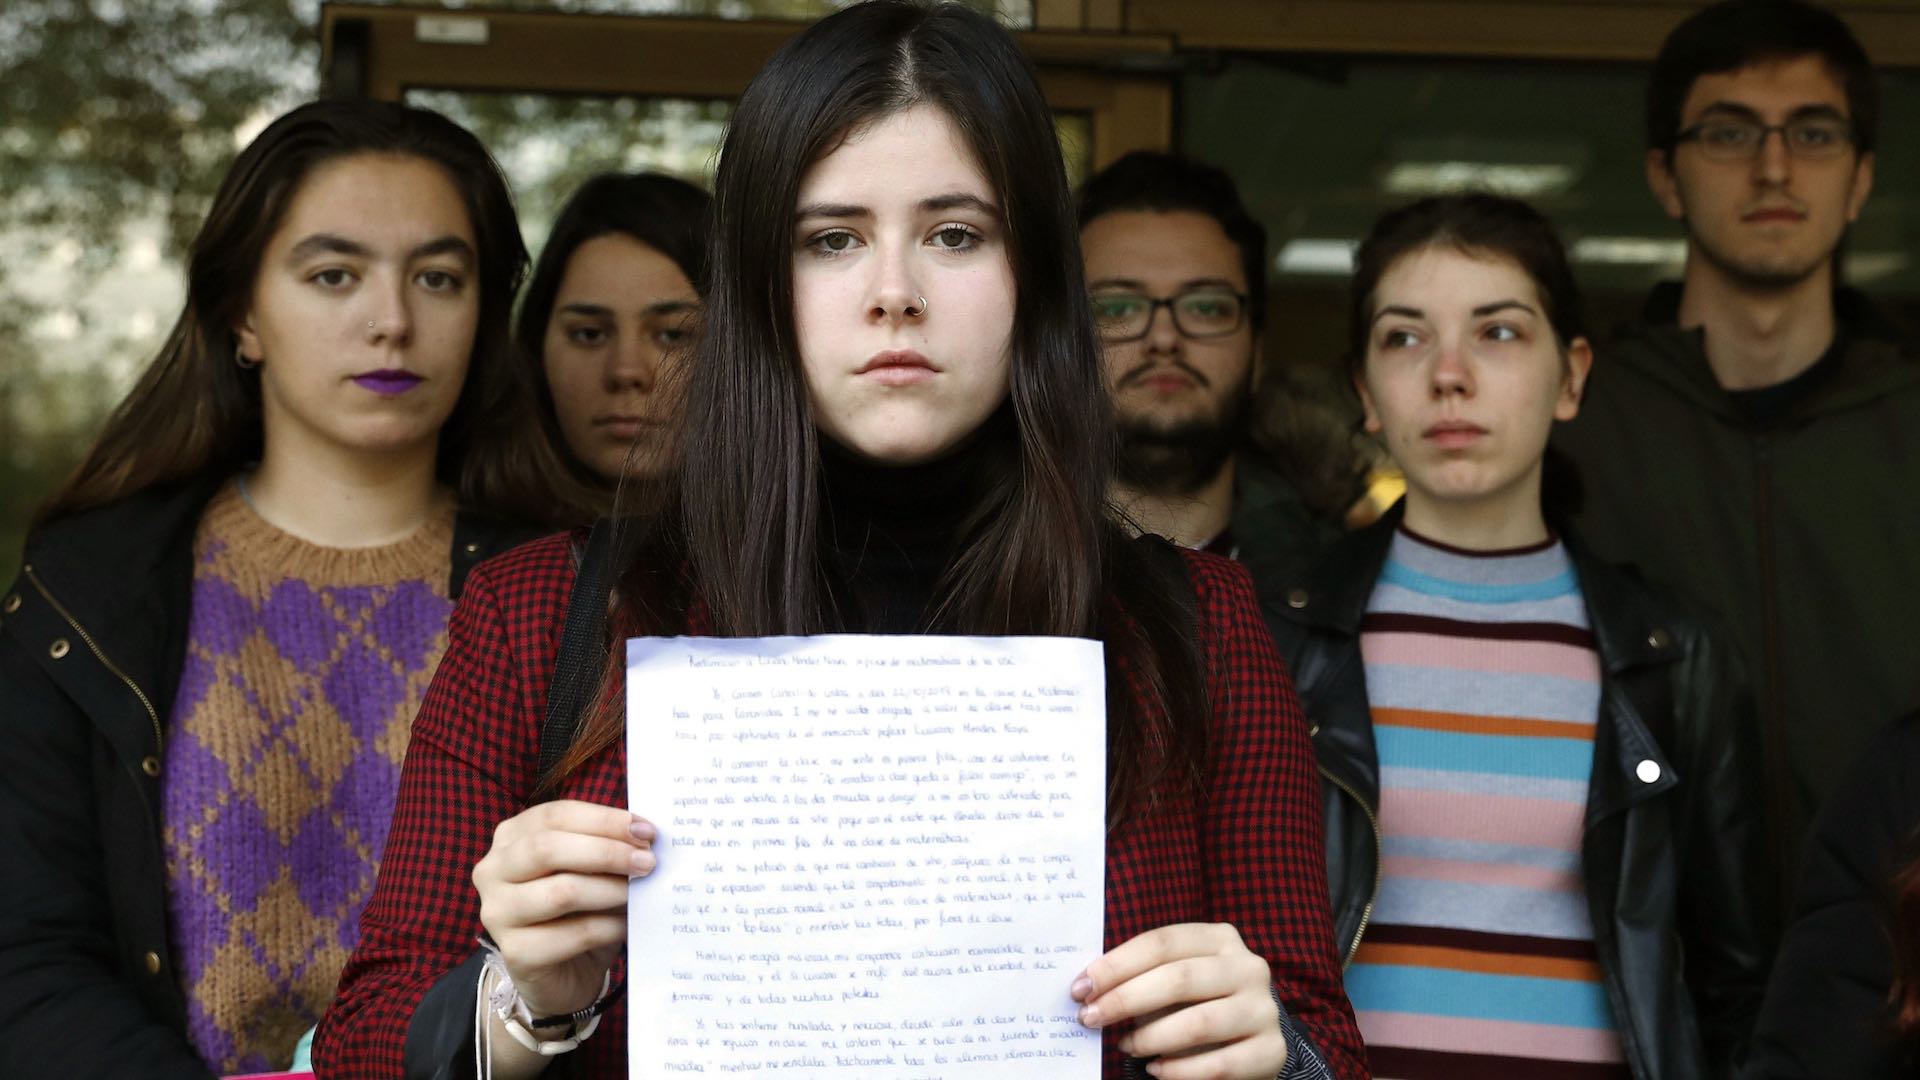 Suspendido un profesor gallego tras increpar a una alumna por llevar escote